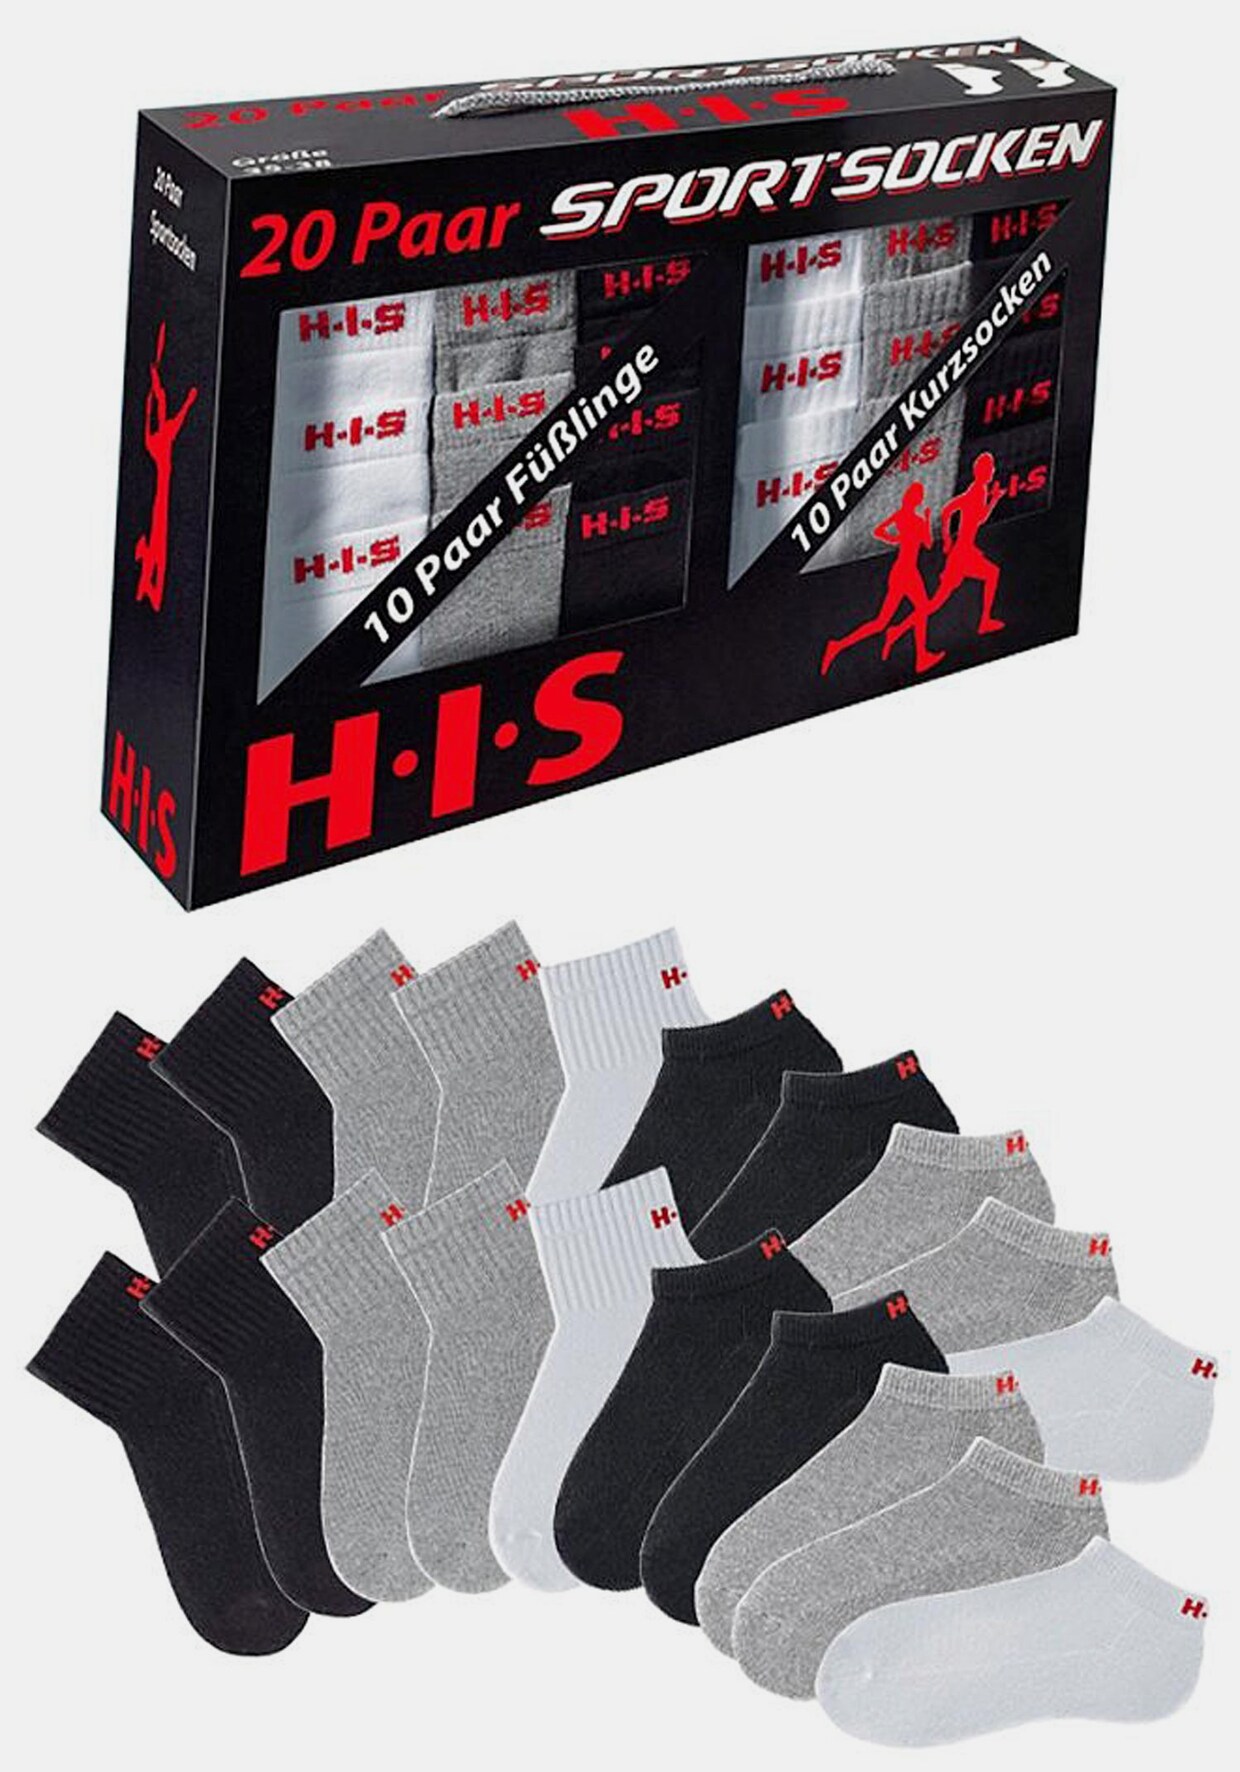 H.I.S Kurzsocken - 1x weiß + 1x grau + 1x schwarz